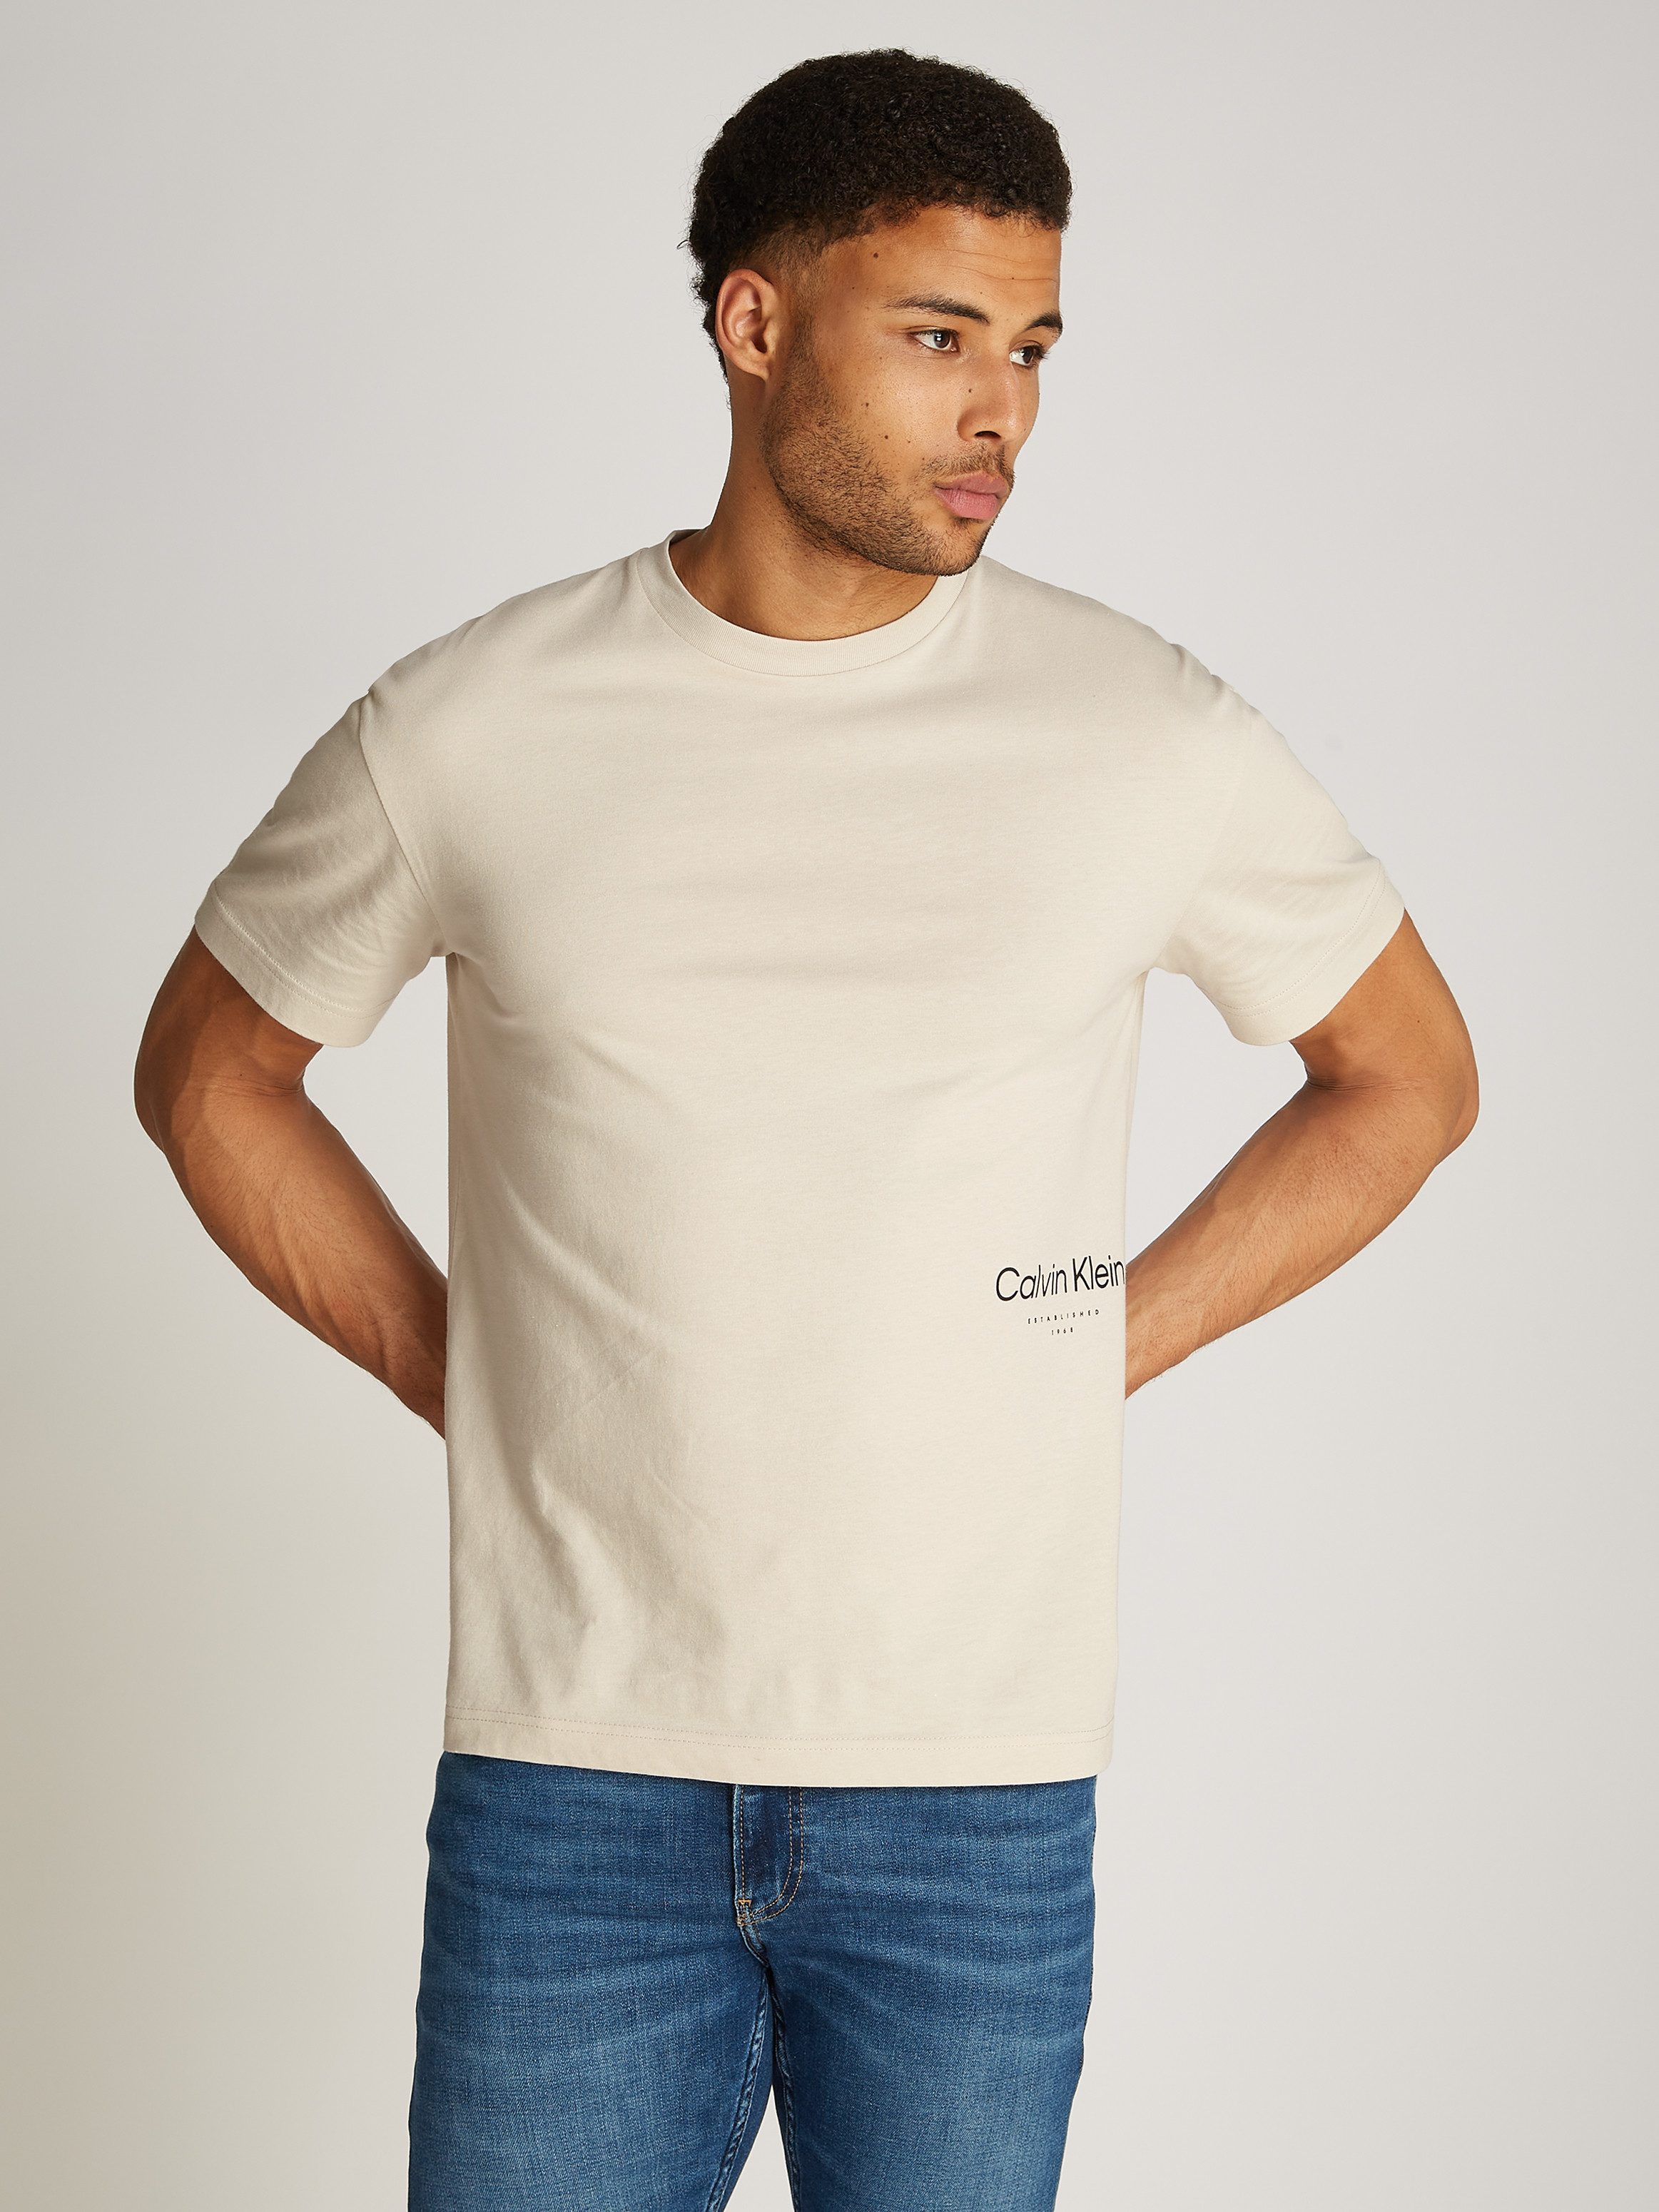 Calvin Klein T-Shirt OFF PLACEMENT LOGO T-SHIRT mit Logoschriftzug